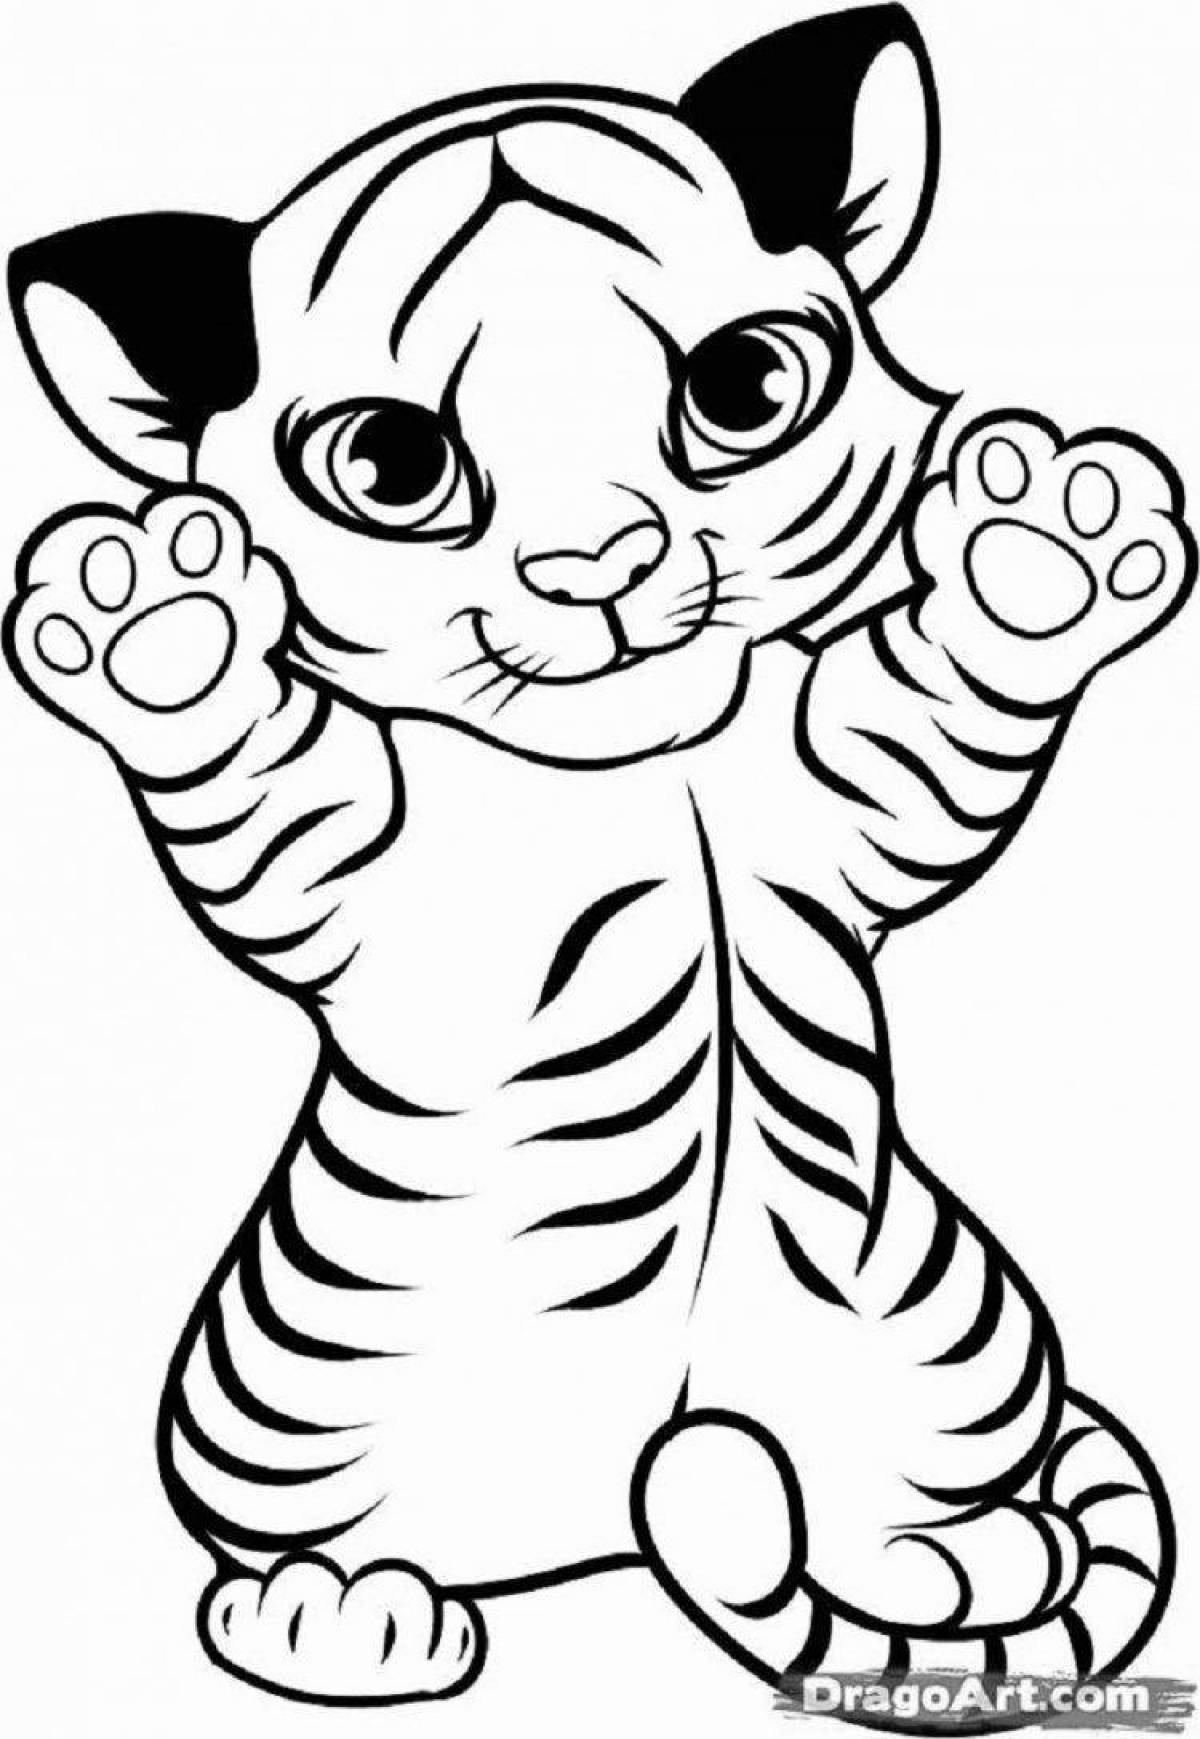 Cosy tiger coloring page